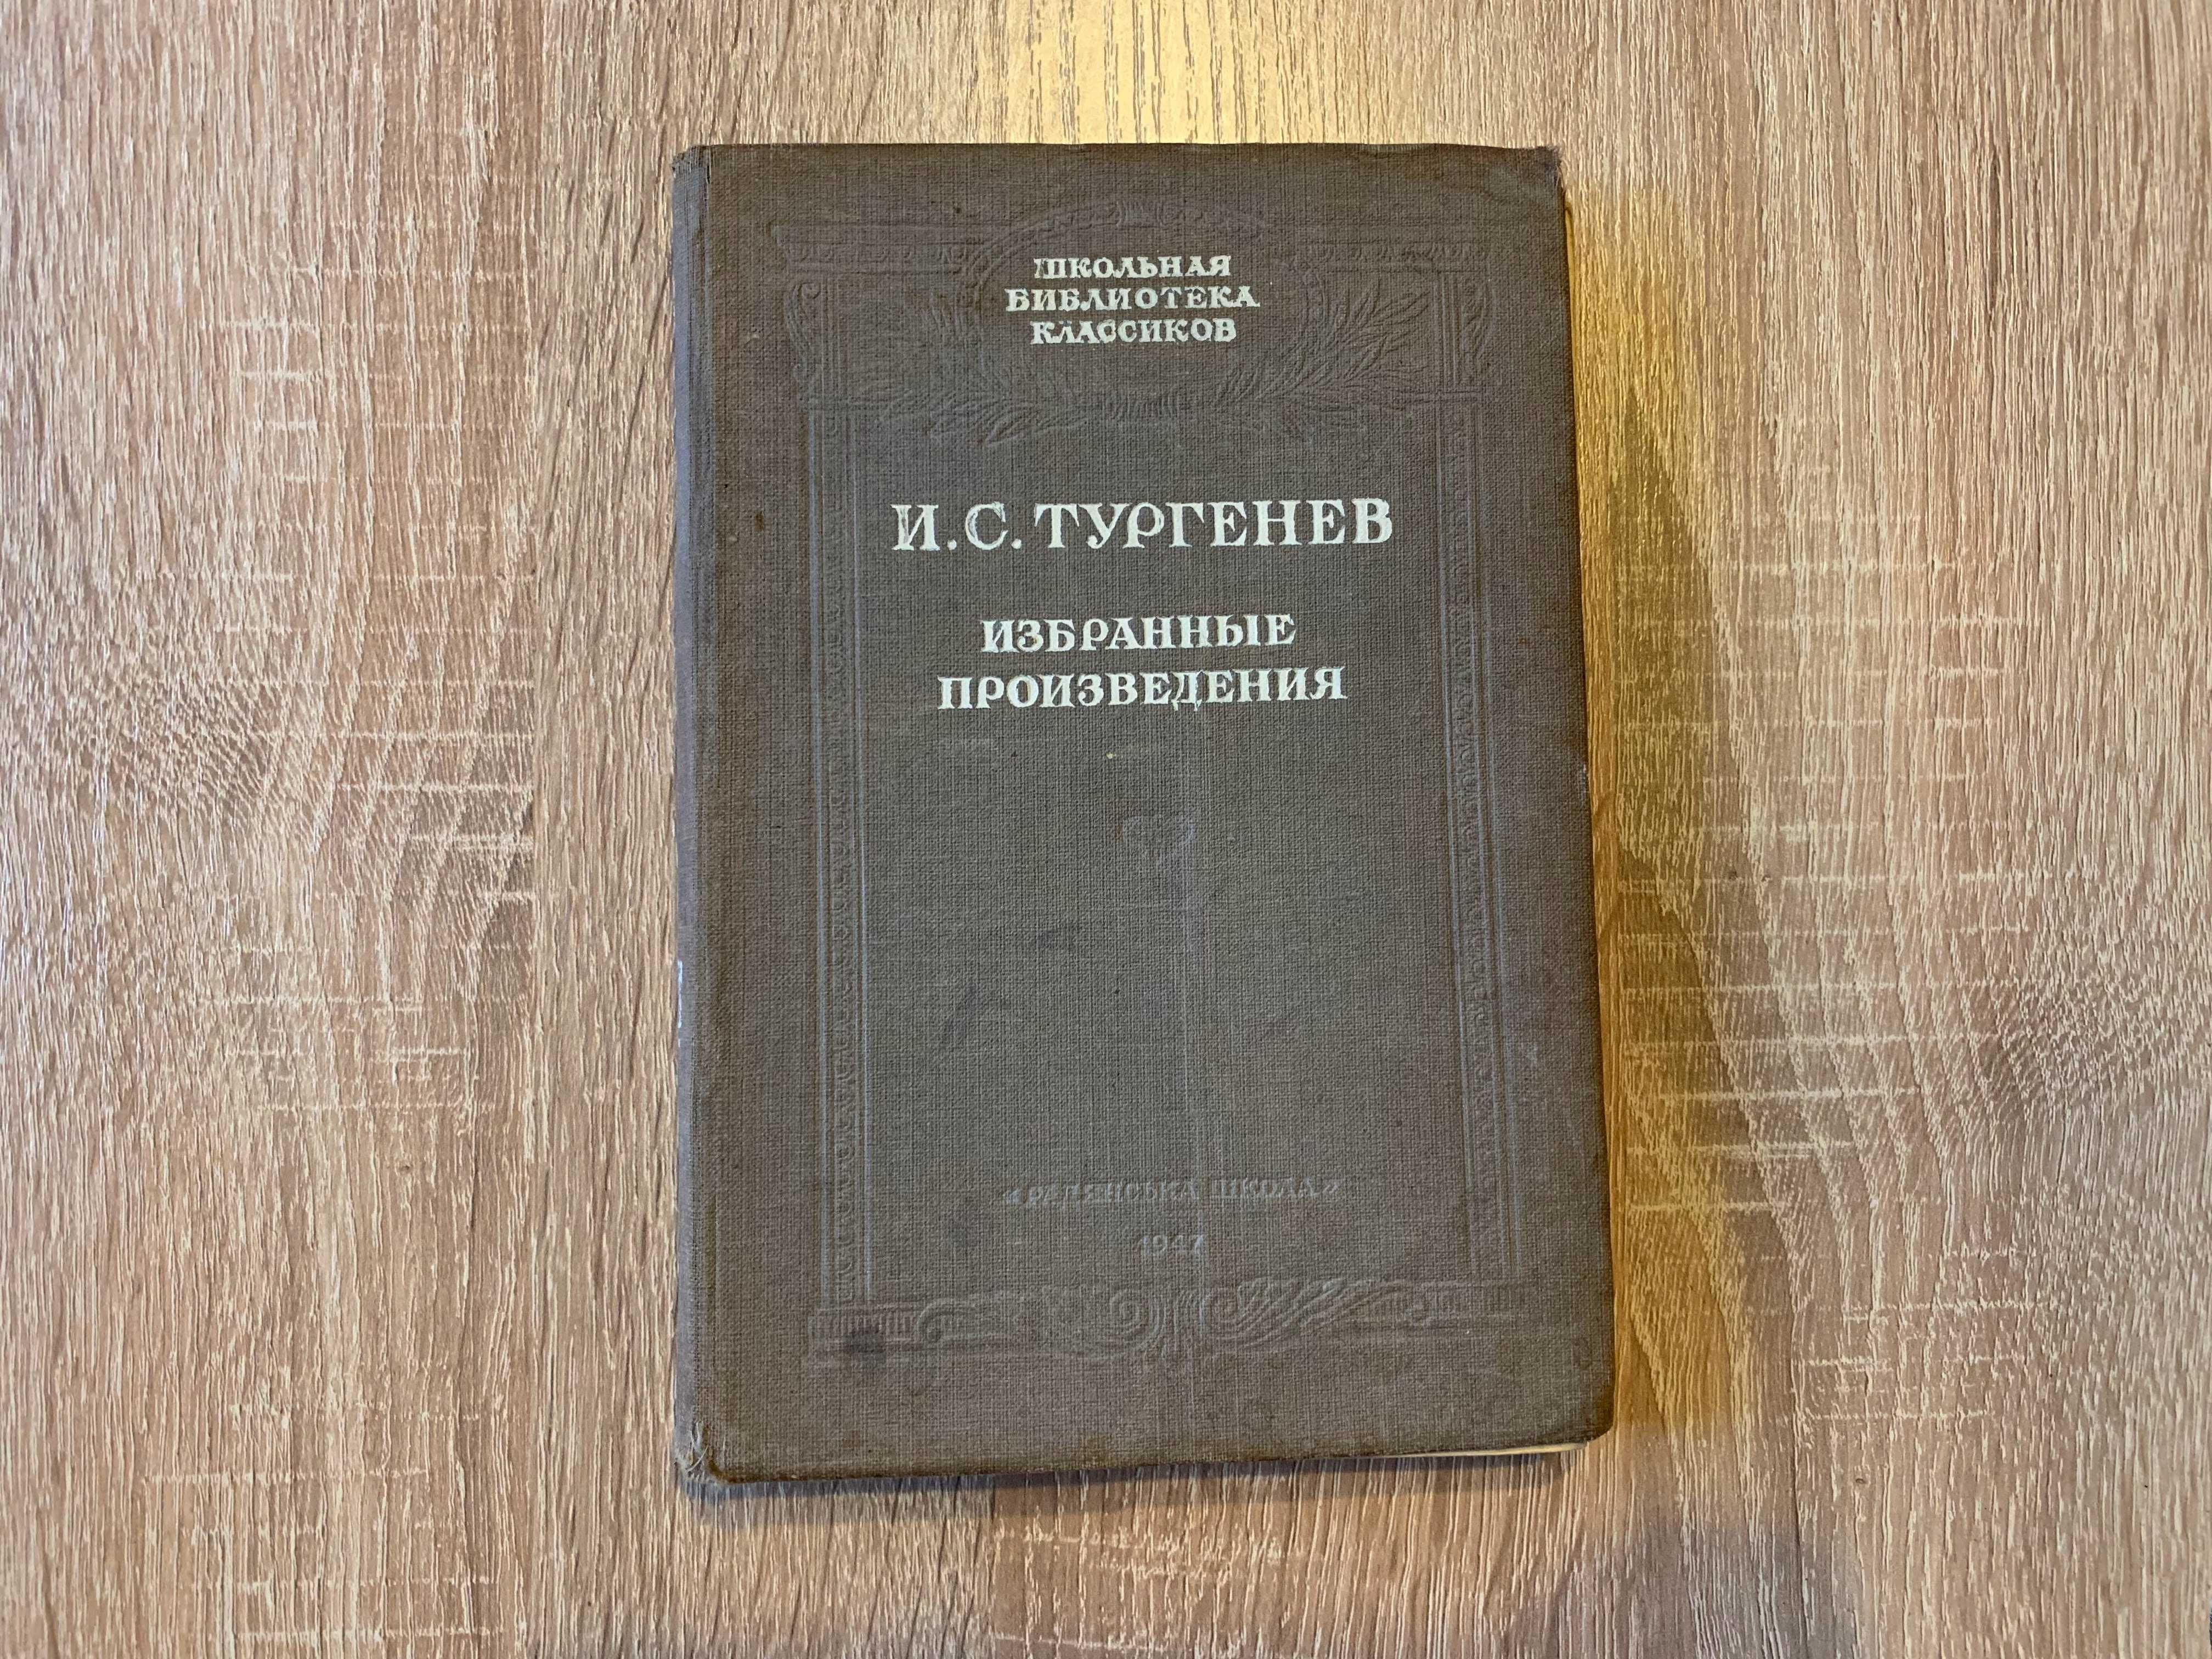 Тургенев И.С. "Повести и рассказы" 1947